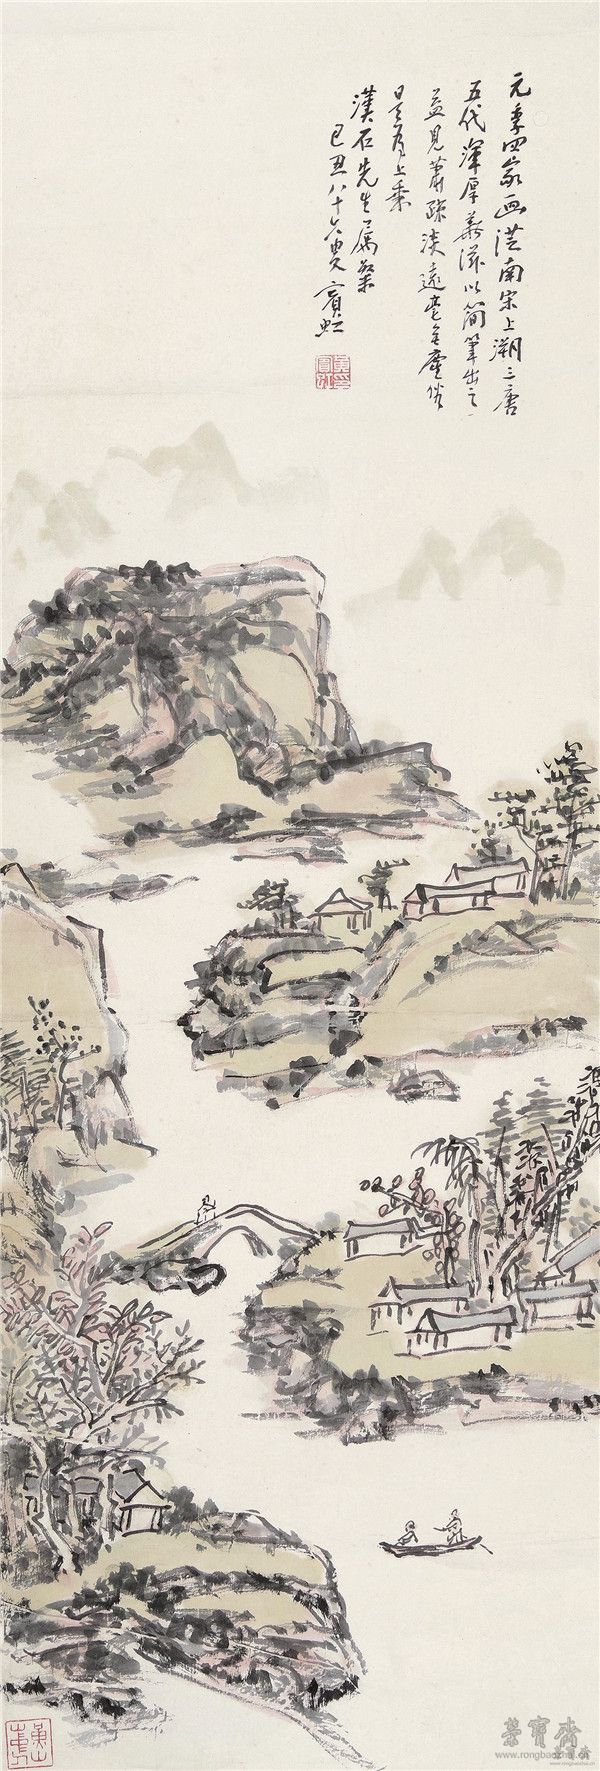 黄宾虹 1865-1955 深山幽居图设色纸本 立轴103×34.5cm 约3.2平尺